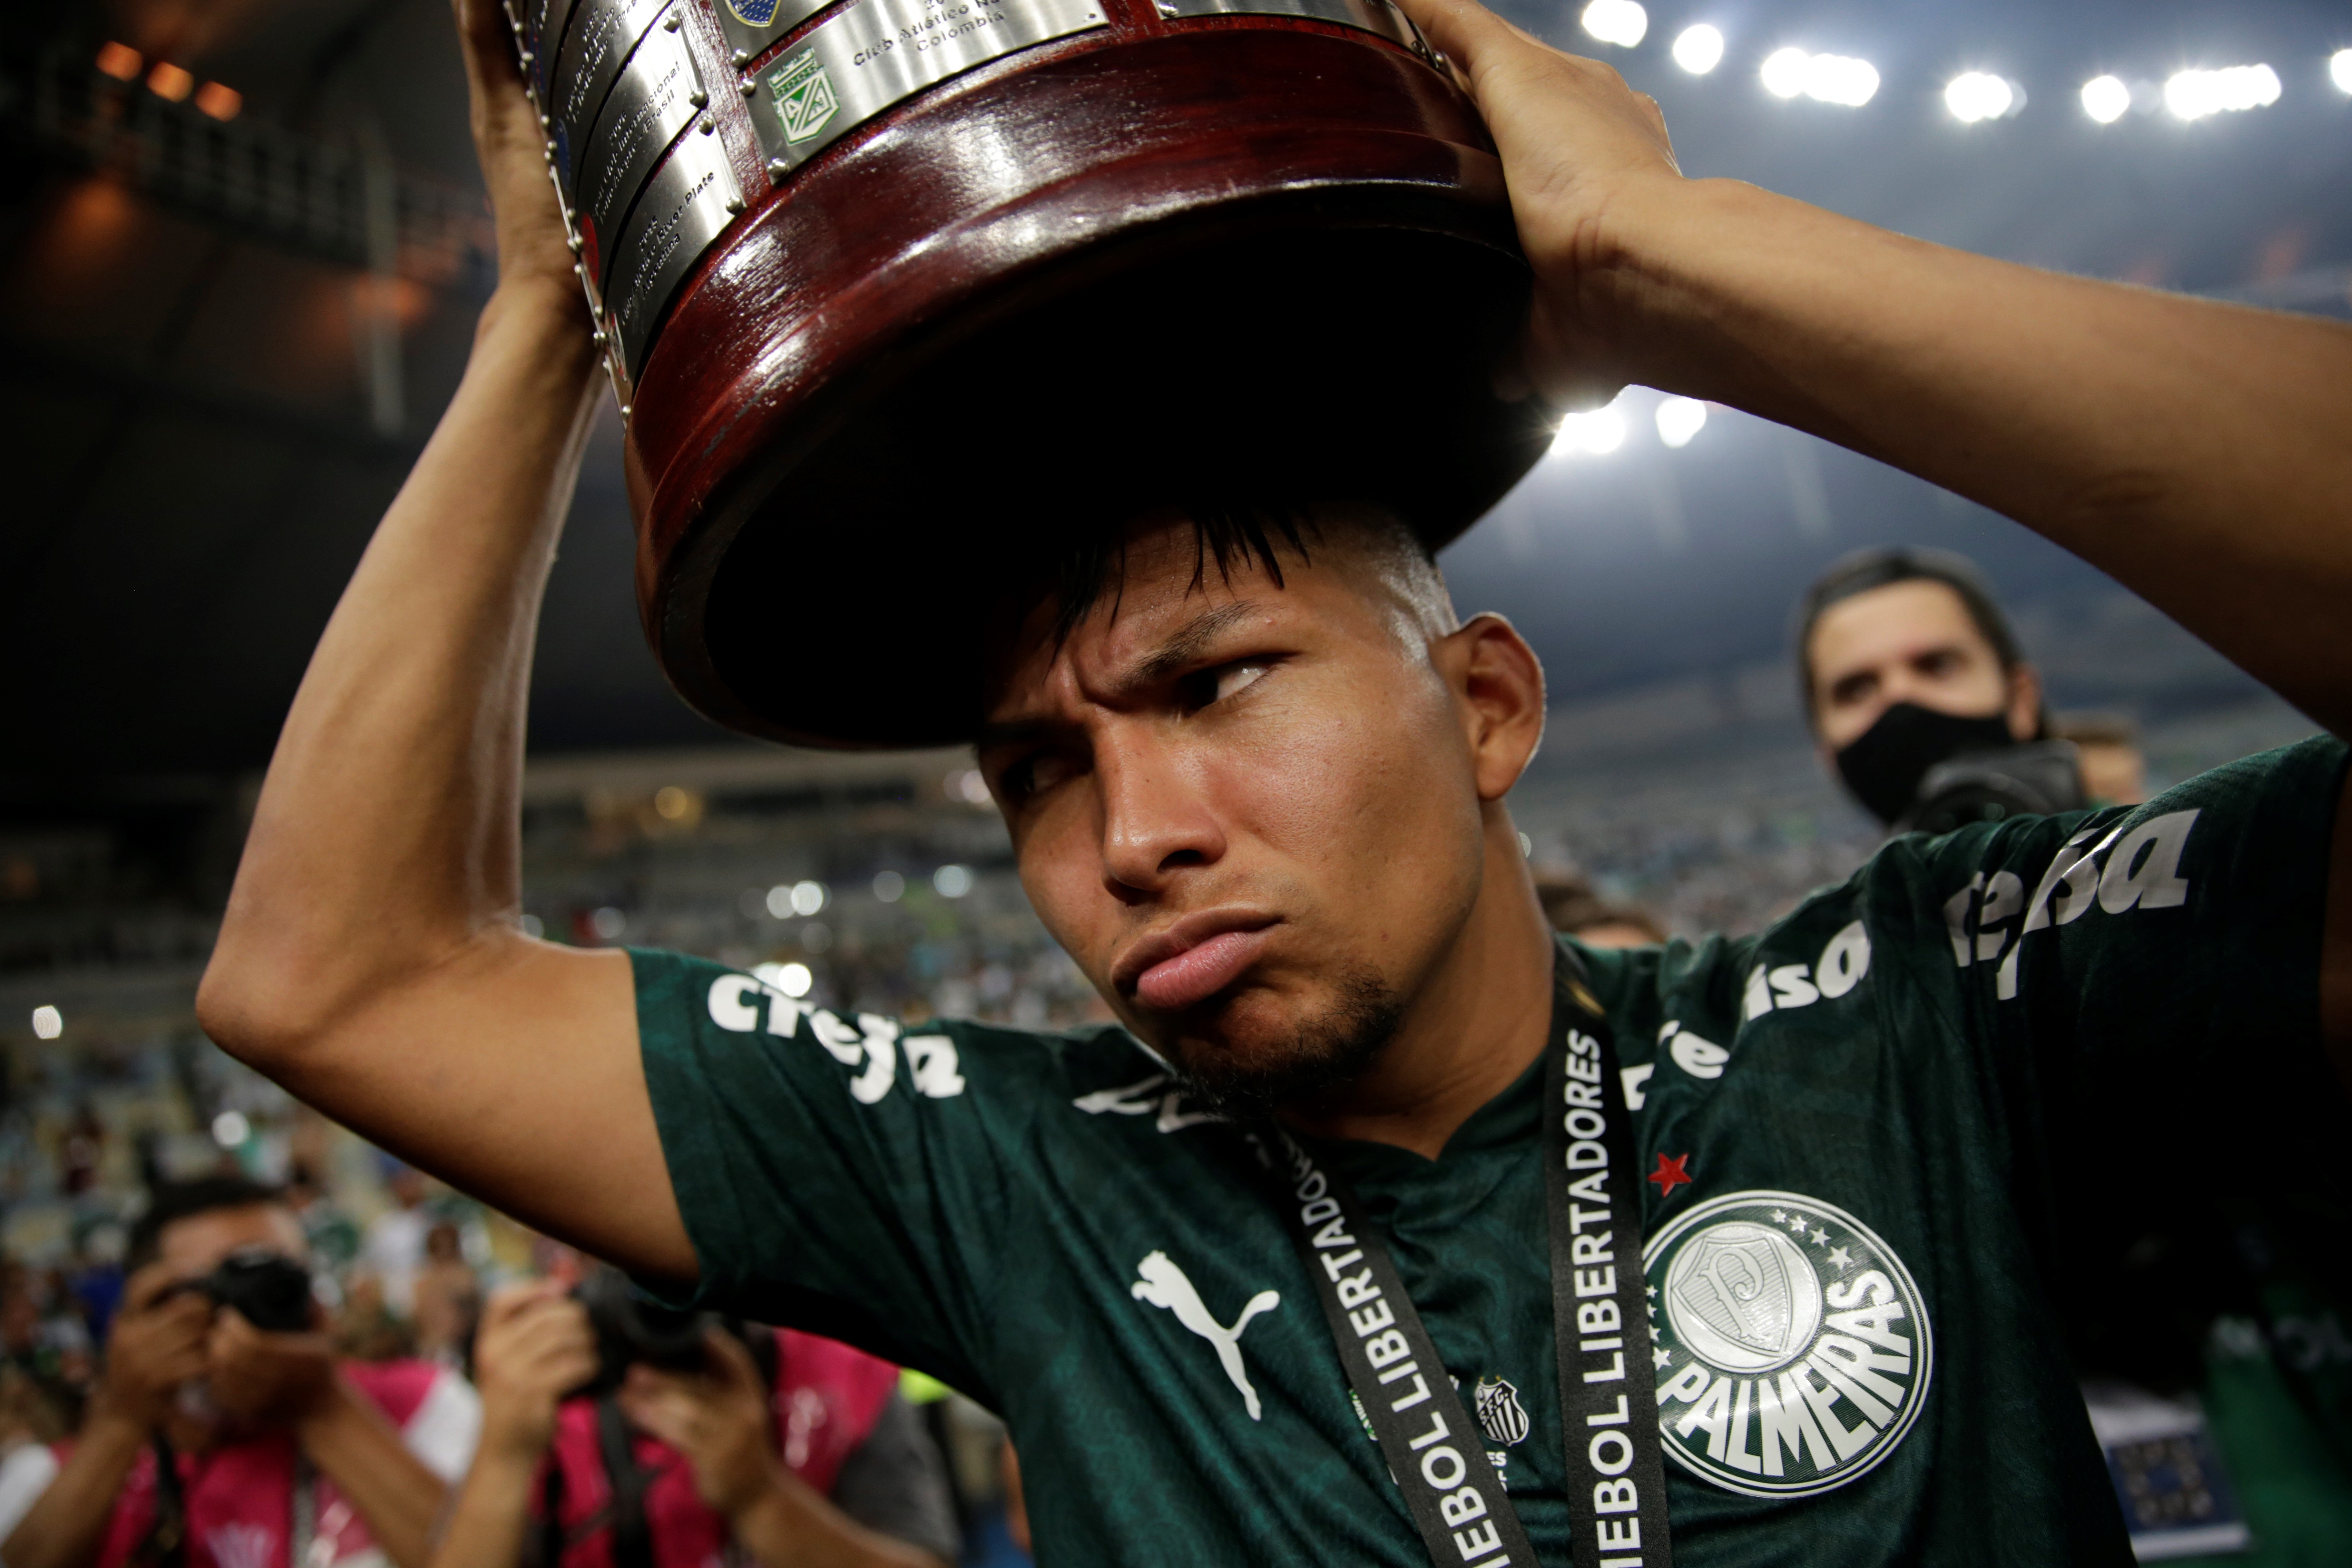 Rony de Palmeiras sostiene el trofeo sobre su cabeza hoy, luego de ganar la final de la Copa Libertadores contra Santos, en el estadio Maracaná de Río de Janeiro (Brasil). EFE/Ricardo Moraes
